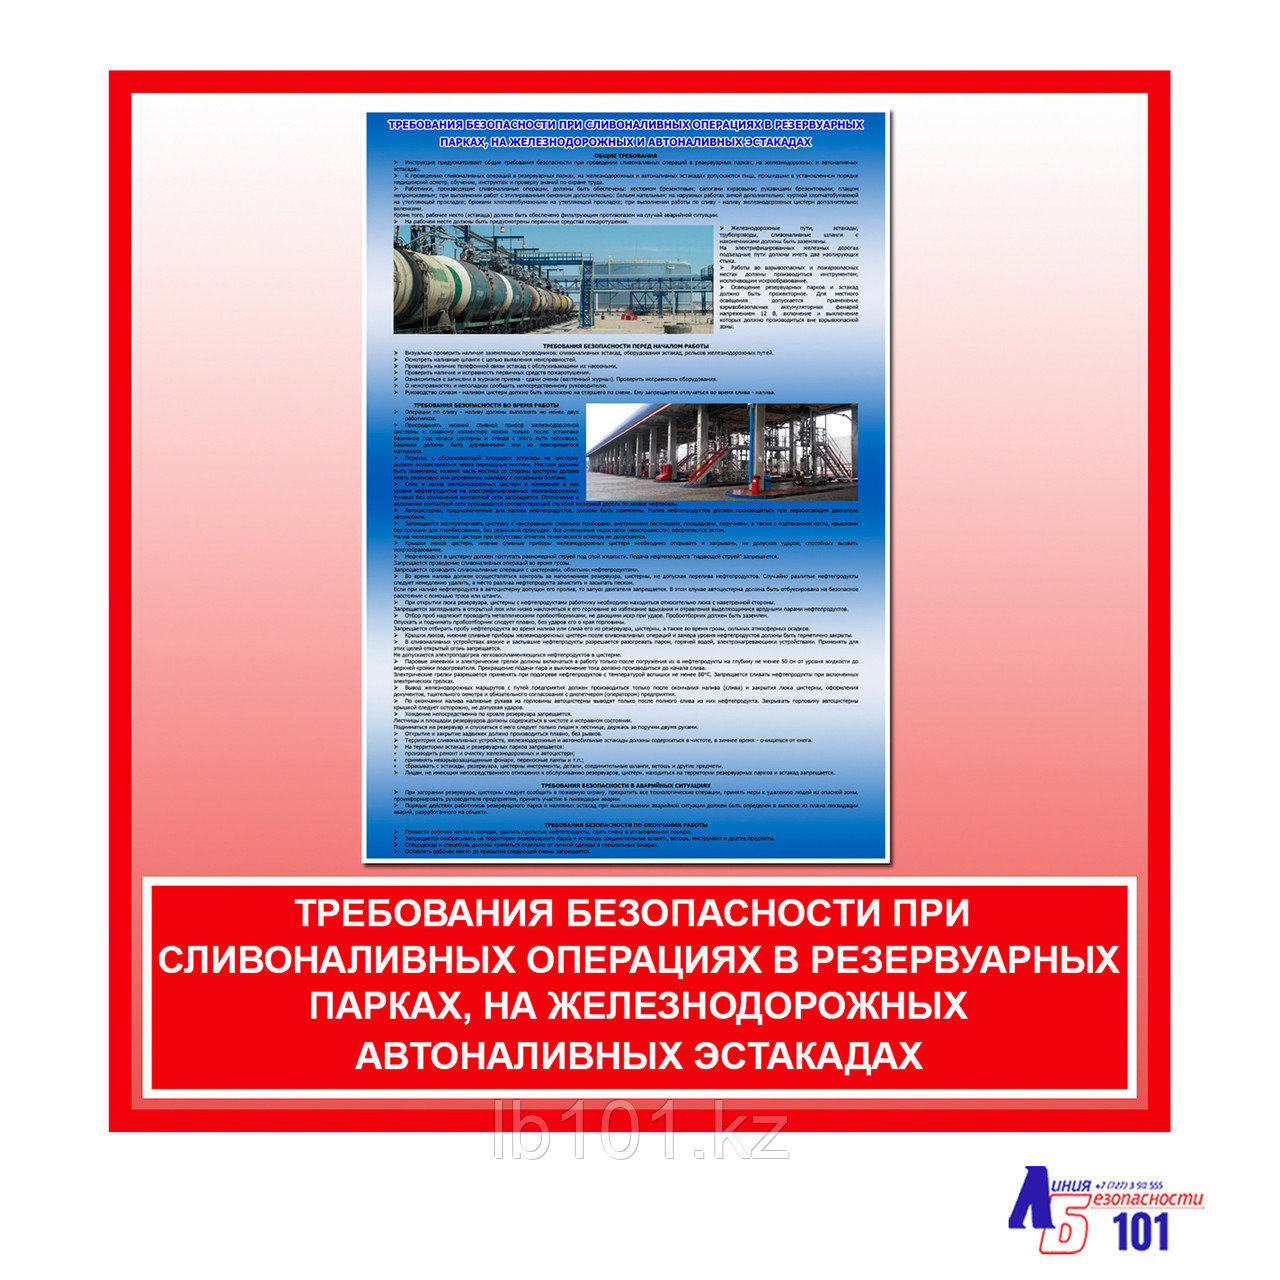 Плакат "Требования безопасности при сливоналивных операциях в резервуарных парках, на железнодорожных ..."